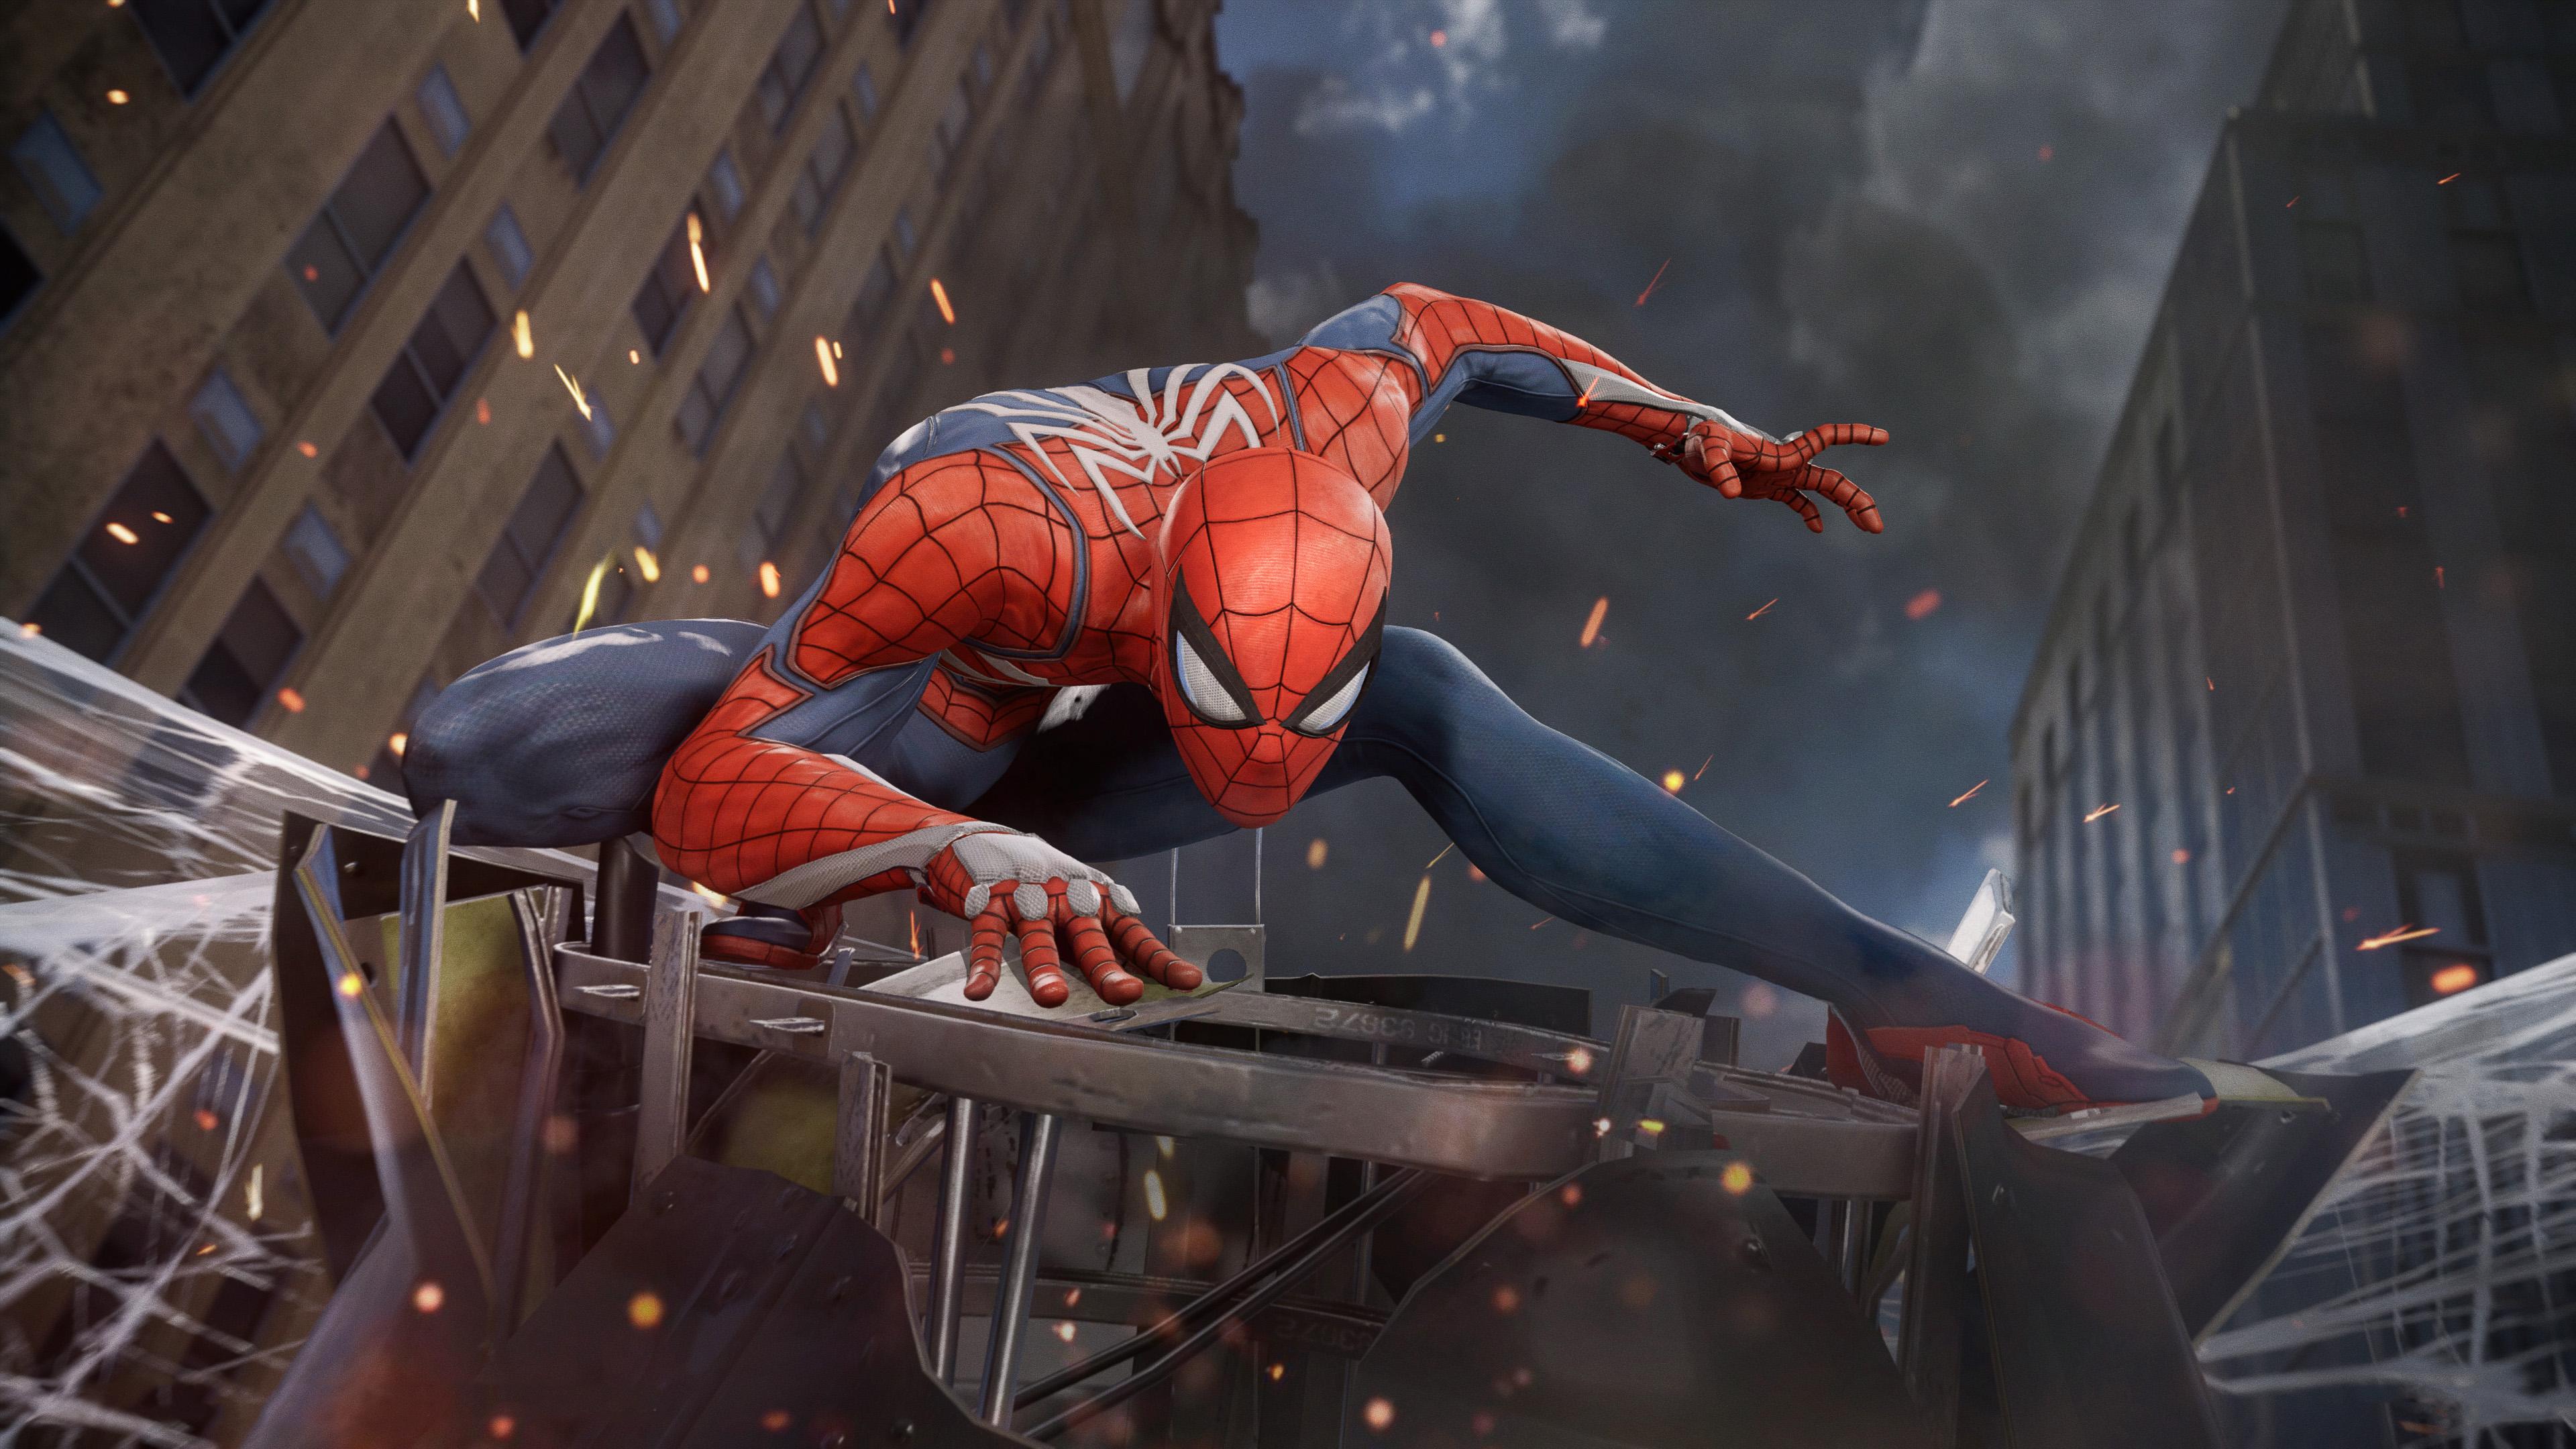 General 3840x2160 Spider-Man Marvel Comics Spider-Man (2018) Insomniac Games PlayStation 4 Playstation 4 Pro Marvel's Spider-Man